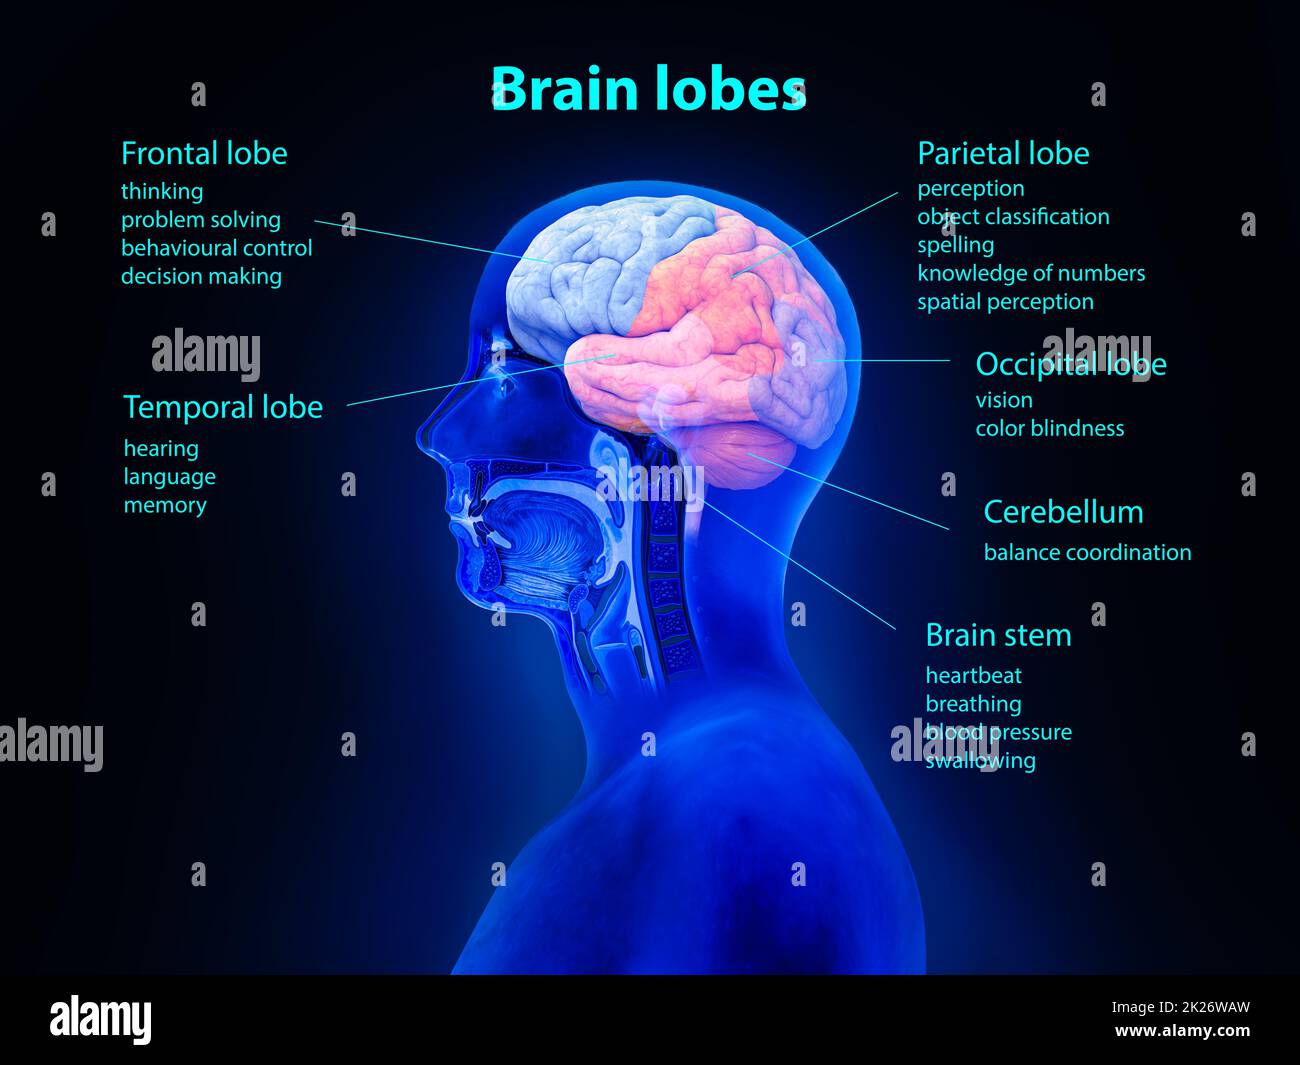 Hirnanatomie-Konzept. Gehirnlappen, Sehvermögen, digitales menschliches Gehirn. Neuronales Netzwerk. IQ-Tests, künstliche Intelligenz, virtuelle Emulation, wissenschaftliches Technologiekonzept. Brainstorming: Idee denken. 3D-Rendern Stockfoto